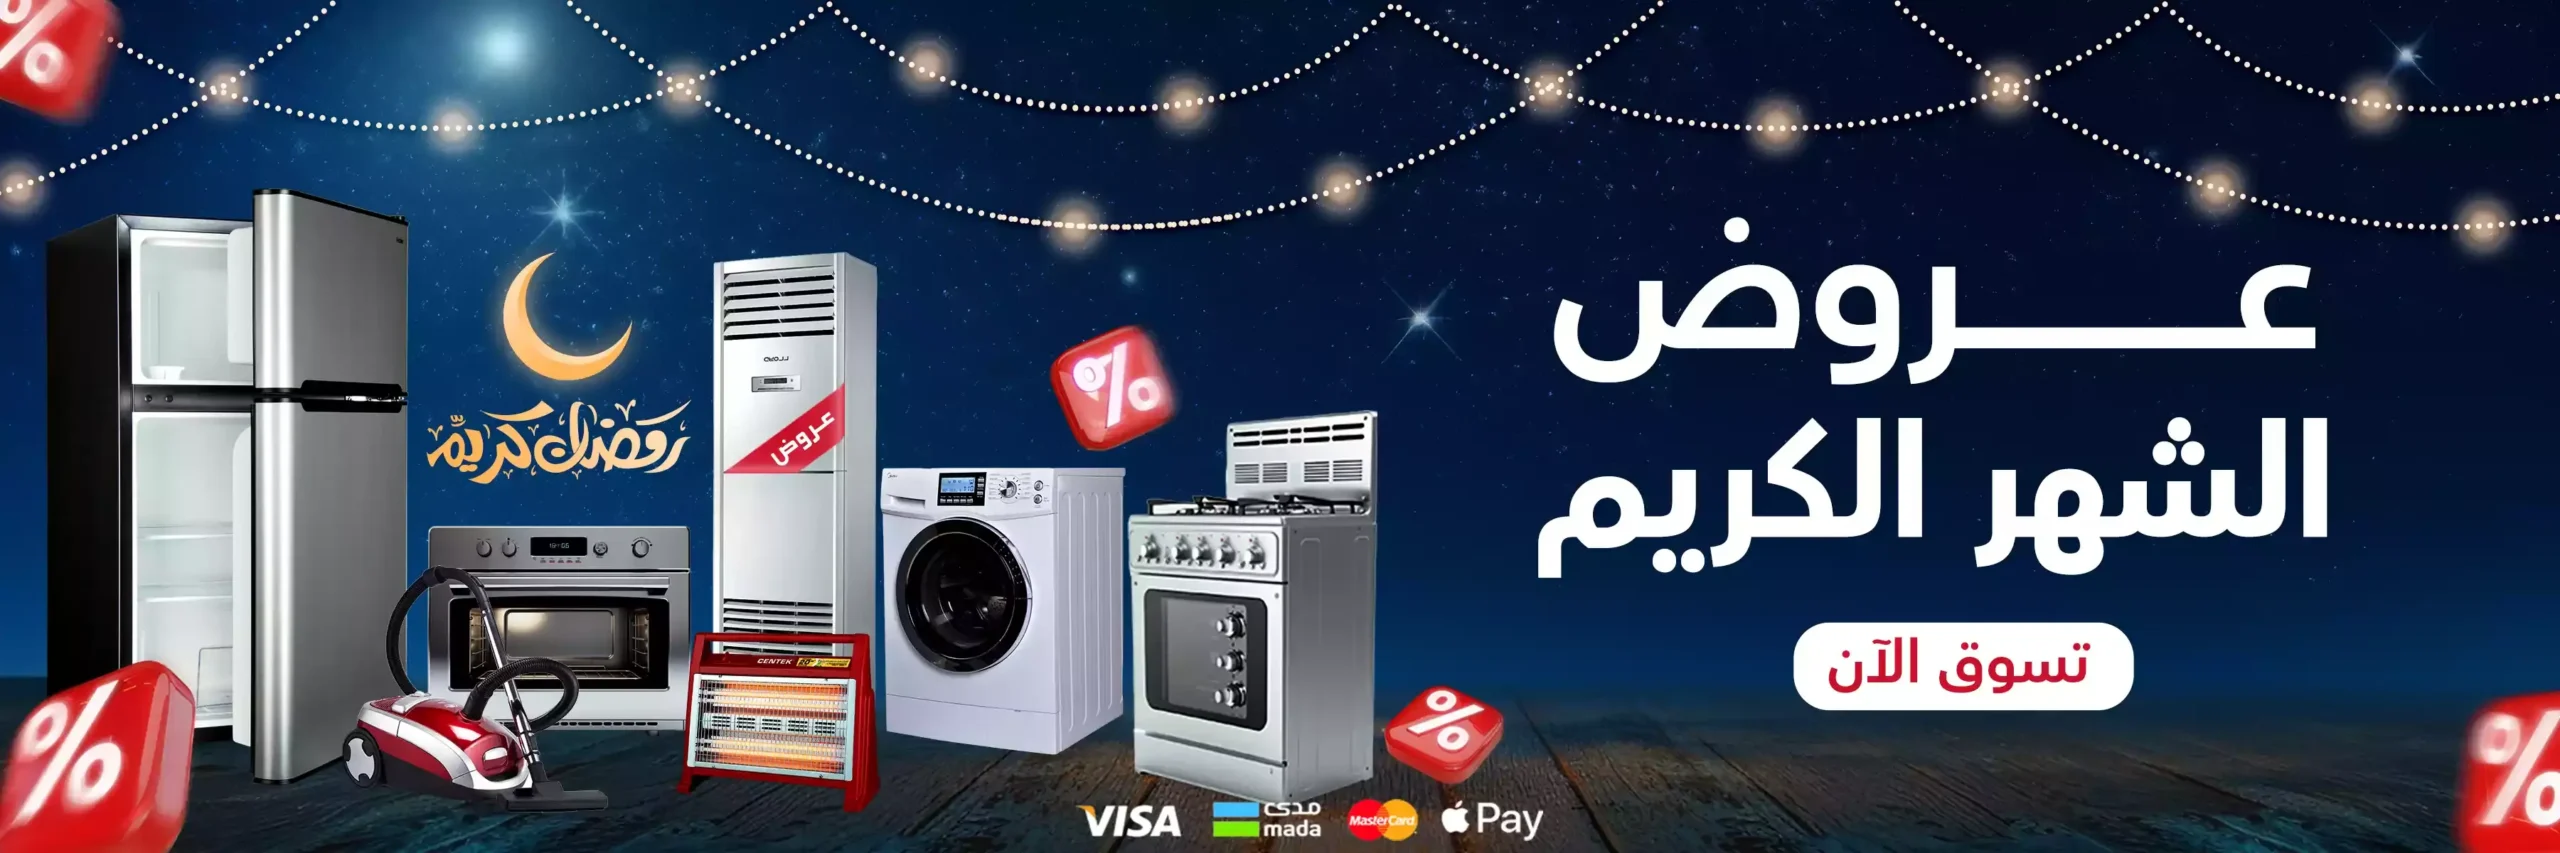 عروض رمضان بافضل سعر للاجهزة الكهربائية